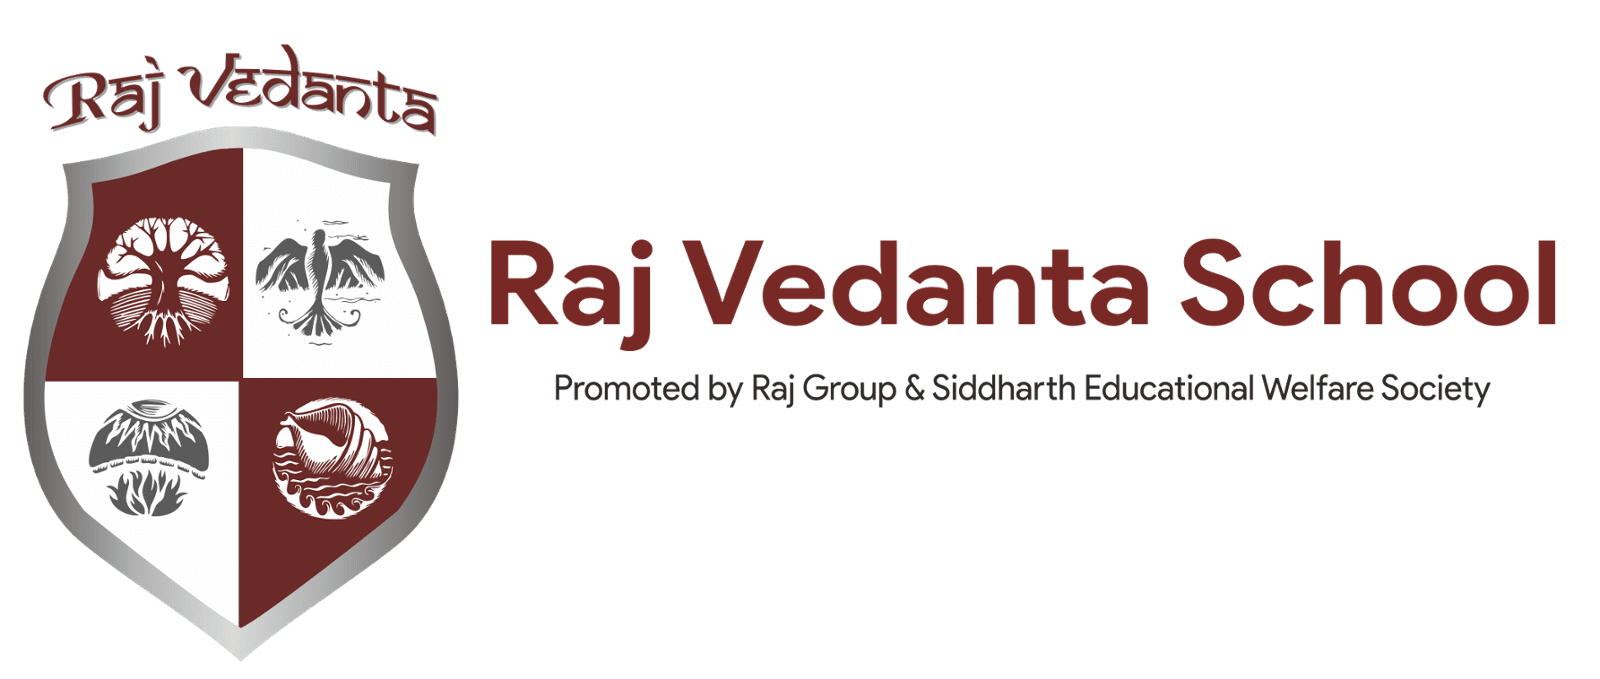 High School in Bhopal| Raj Vedanta School